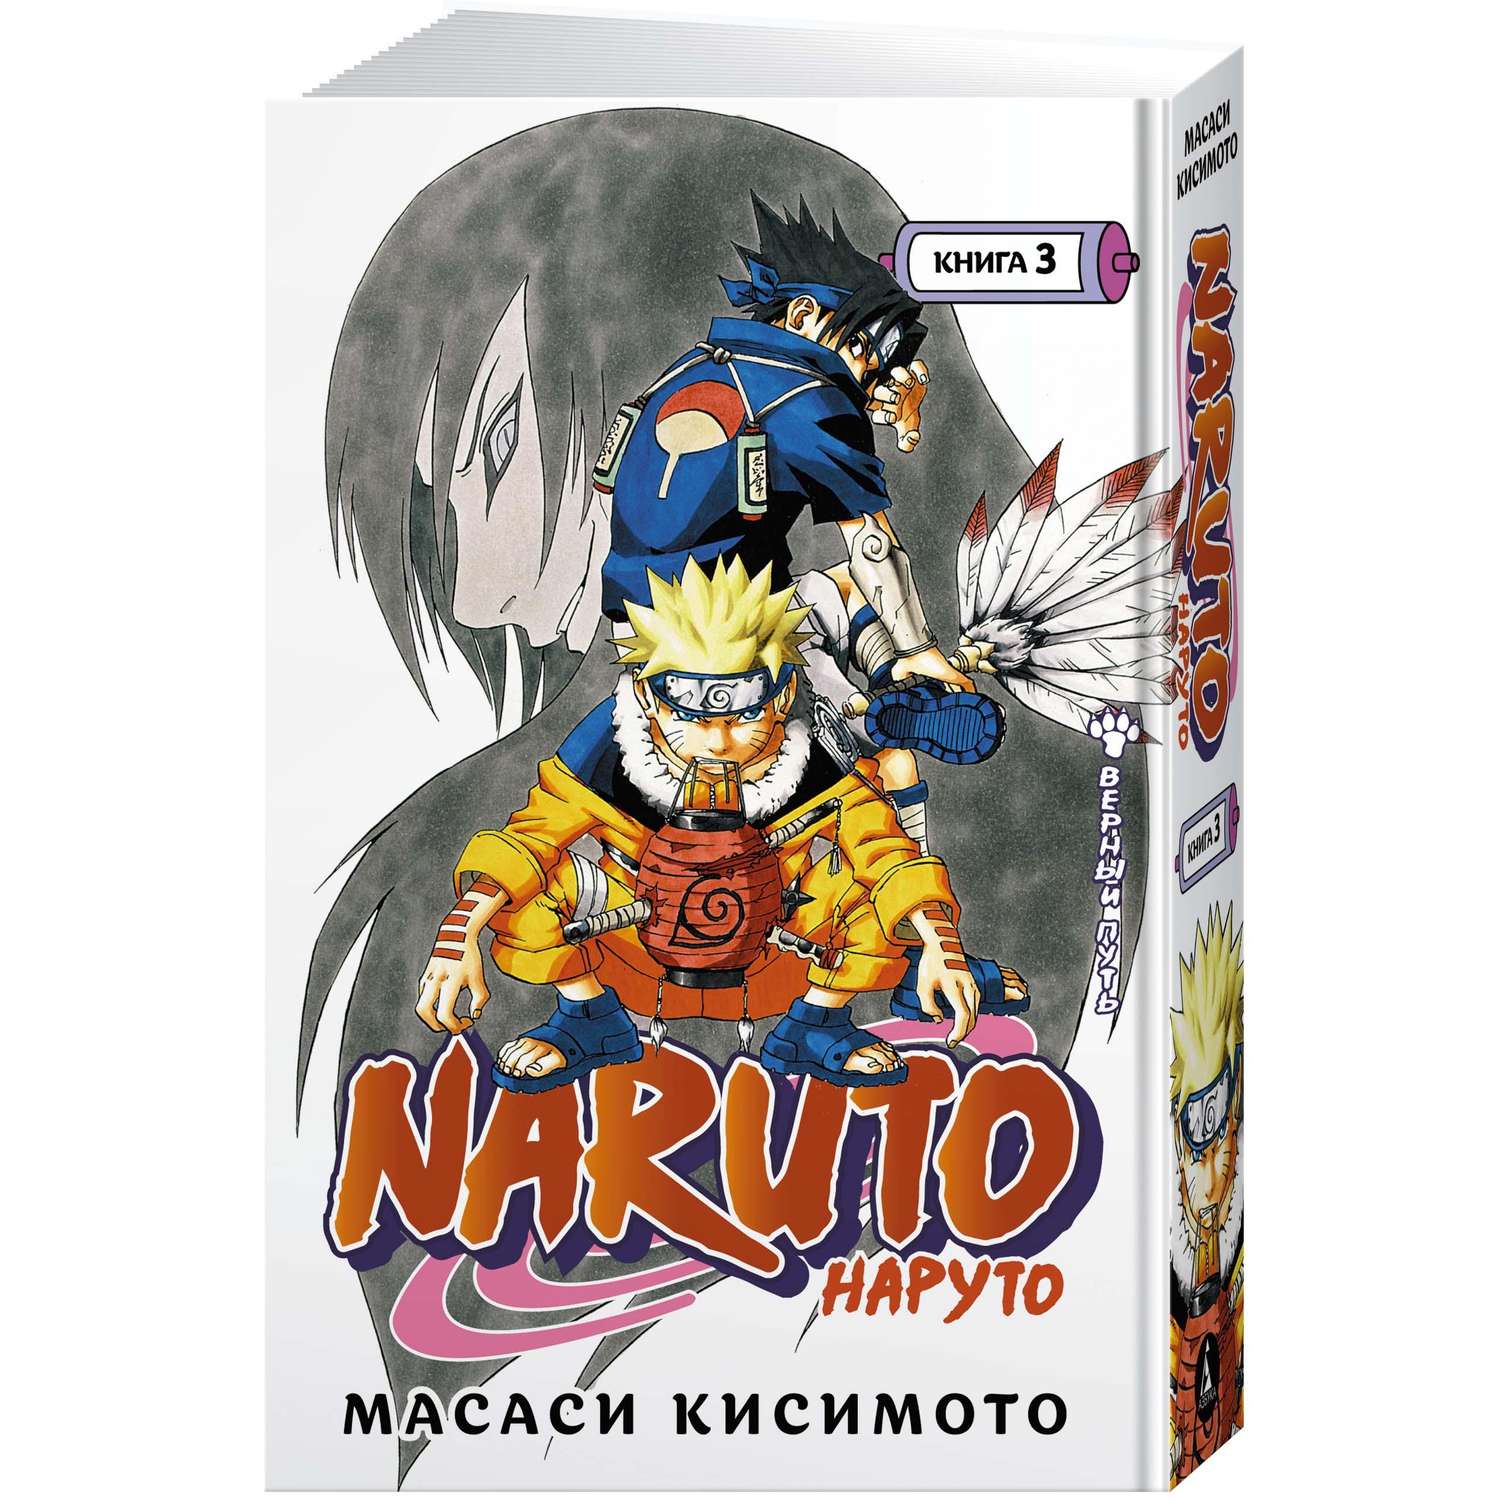 Книга АЗБУКА Naruto. Наруто. Книга 3. Верный путь Кисимото М. Графические романы. Манга - фото 2